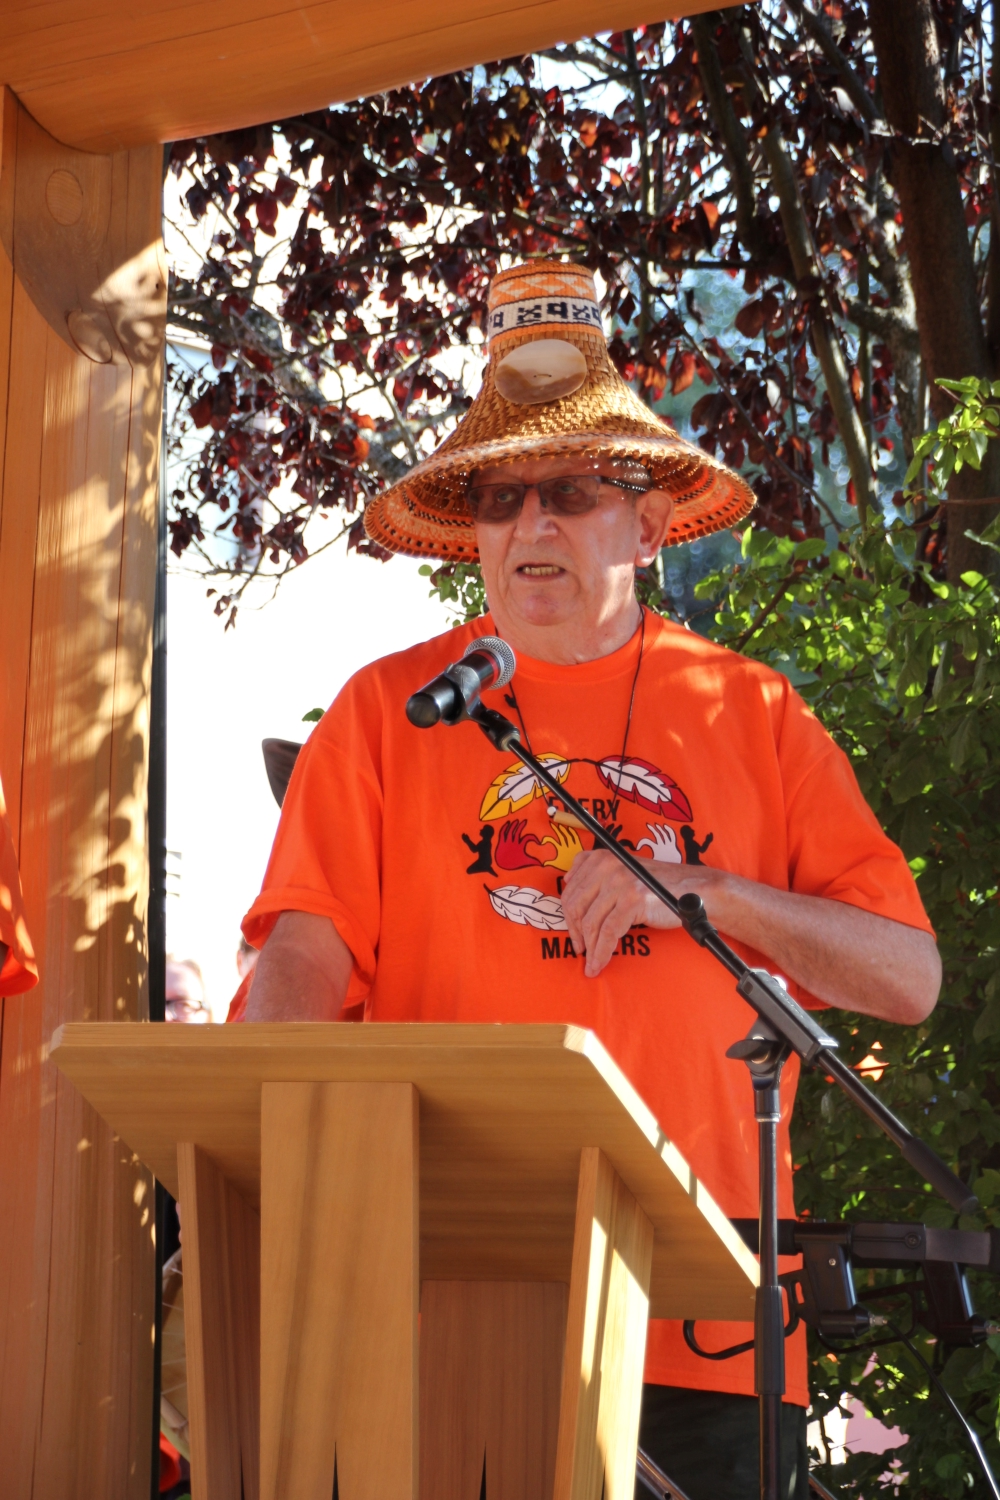 Garry Feschuk stands behind a podium, wearing orange and a woven cedar hat.